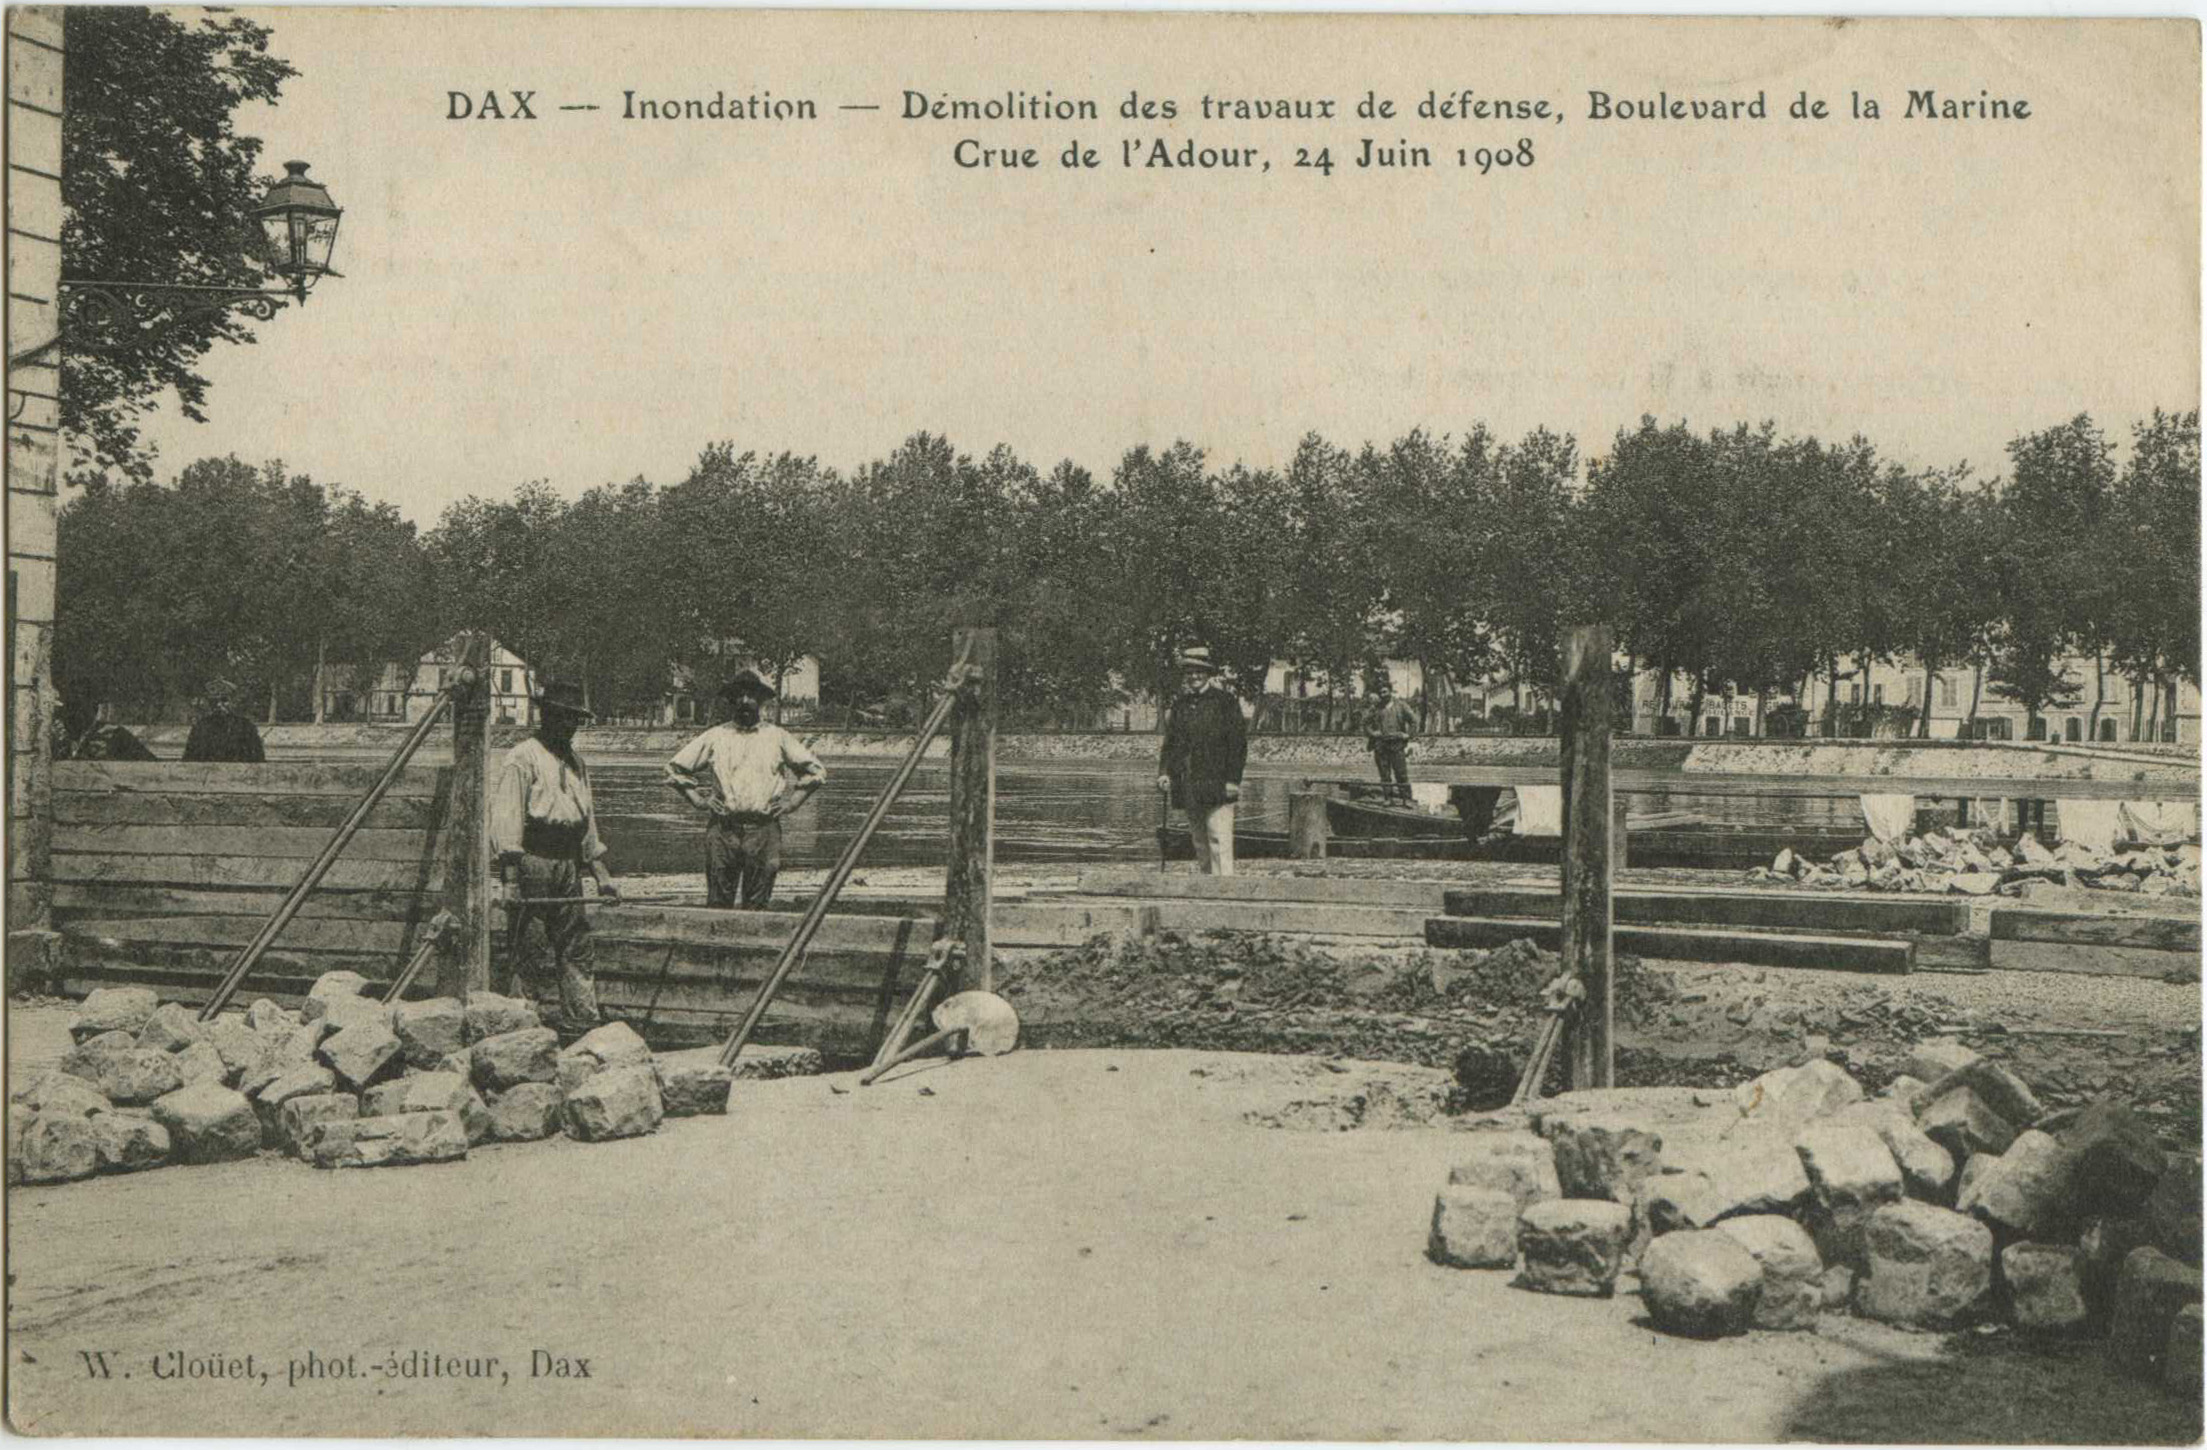 Dax - Inondation - Démolition des travaux de défense, Boulevard de la Marine - Crue de l'Adour, 24 Juin 1908